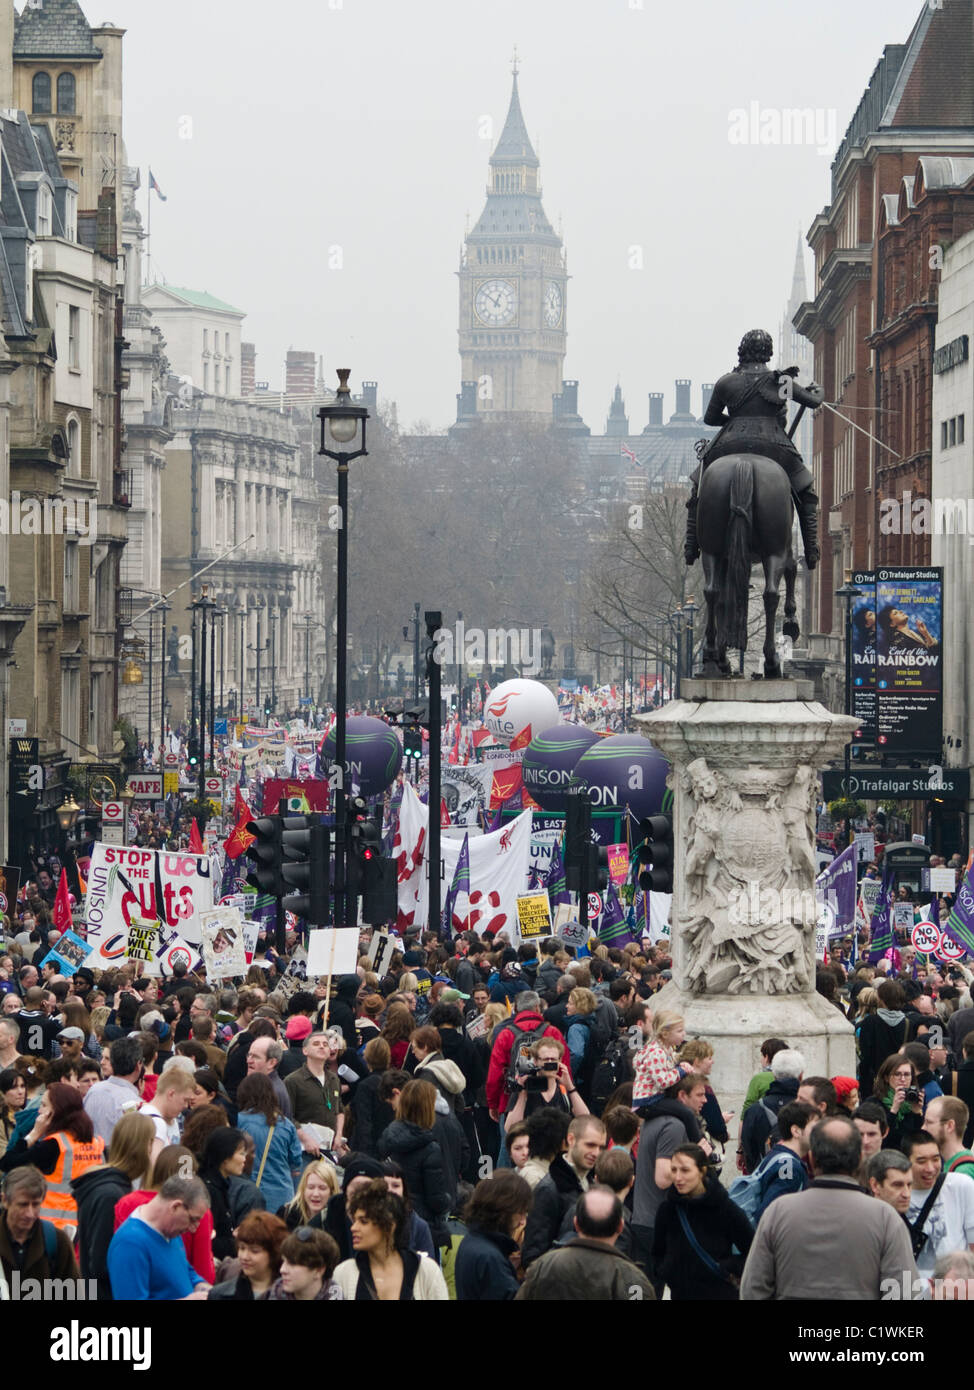 Los manifestantes marchar Whitehall como tomar parte en una manifestación de protesta contra los recortes gubernamentales en Londres. Foto de stock